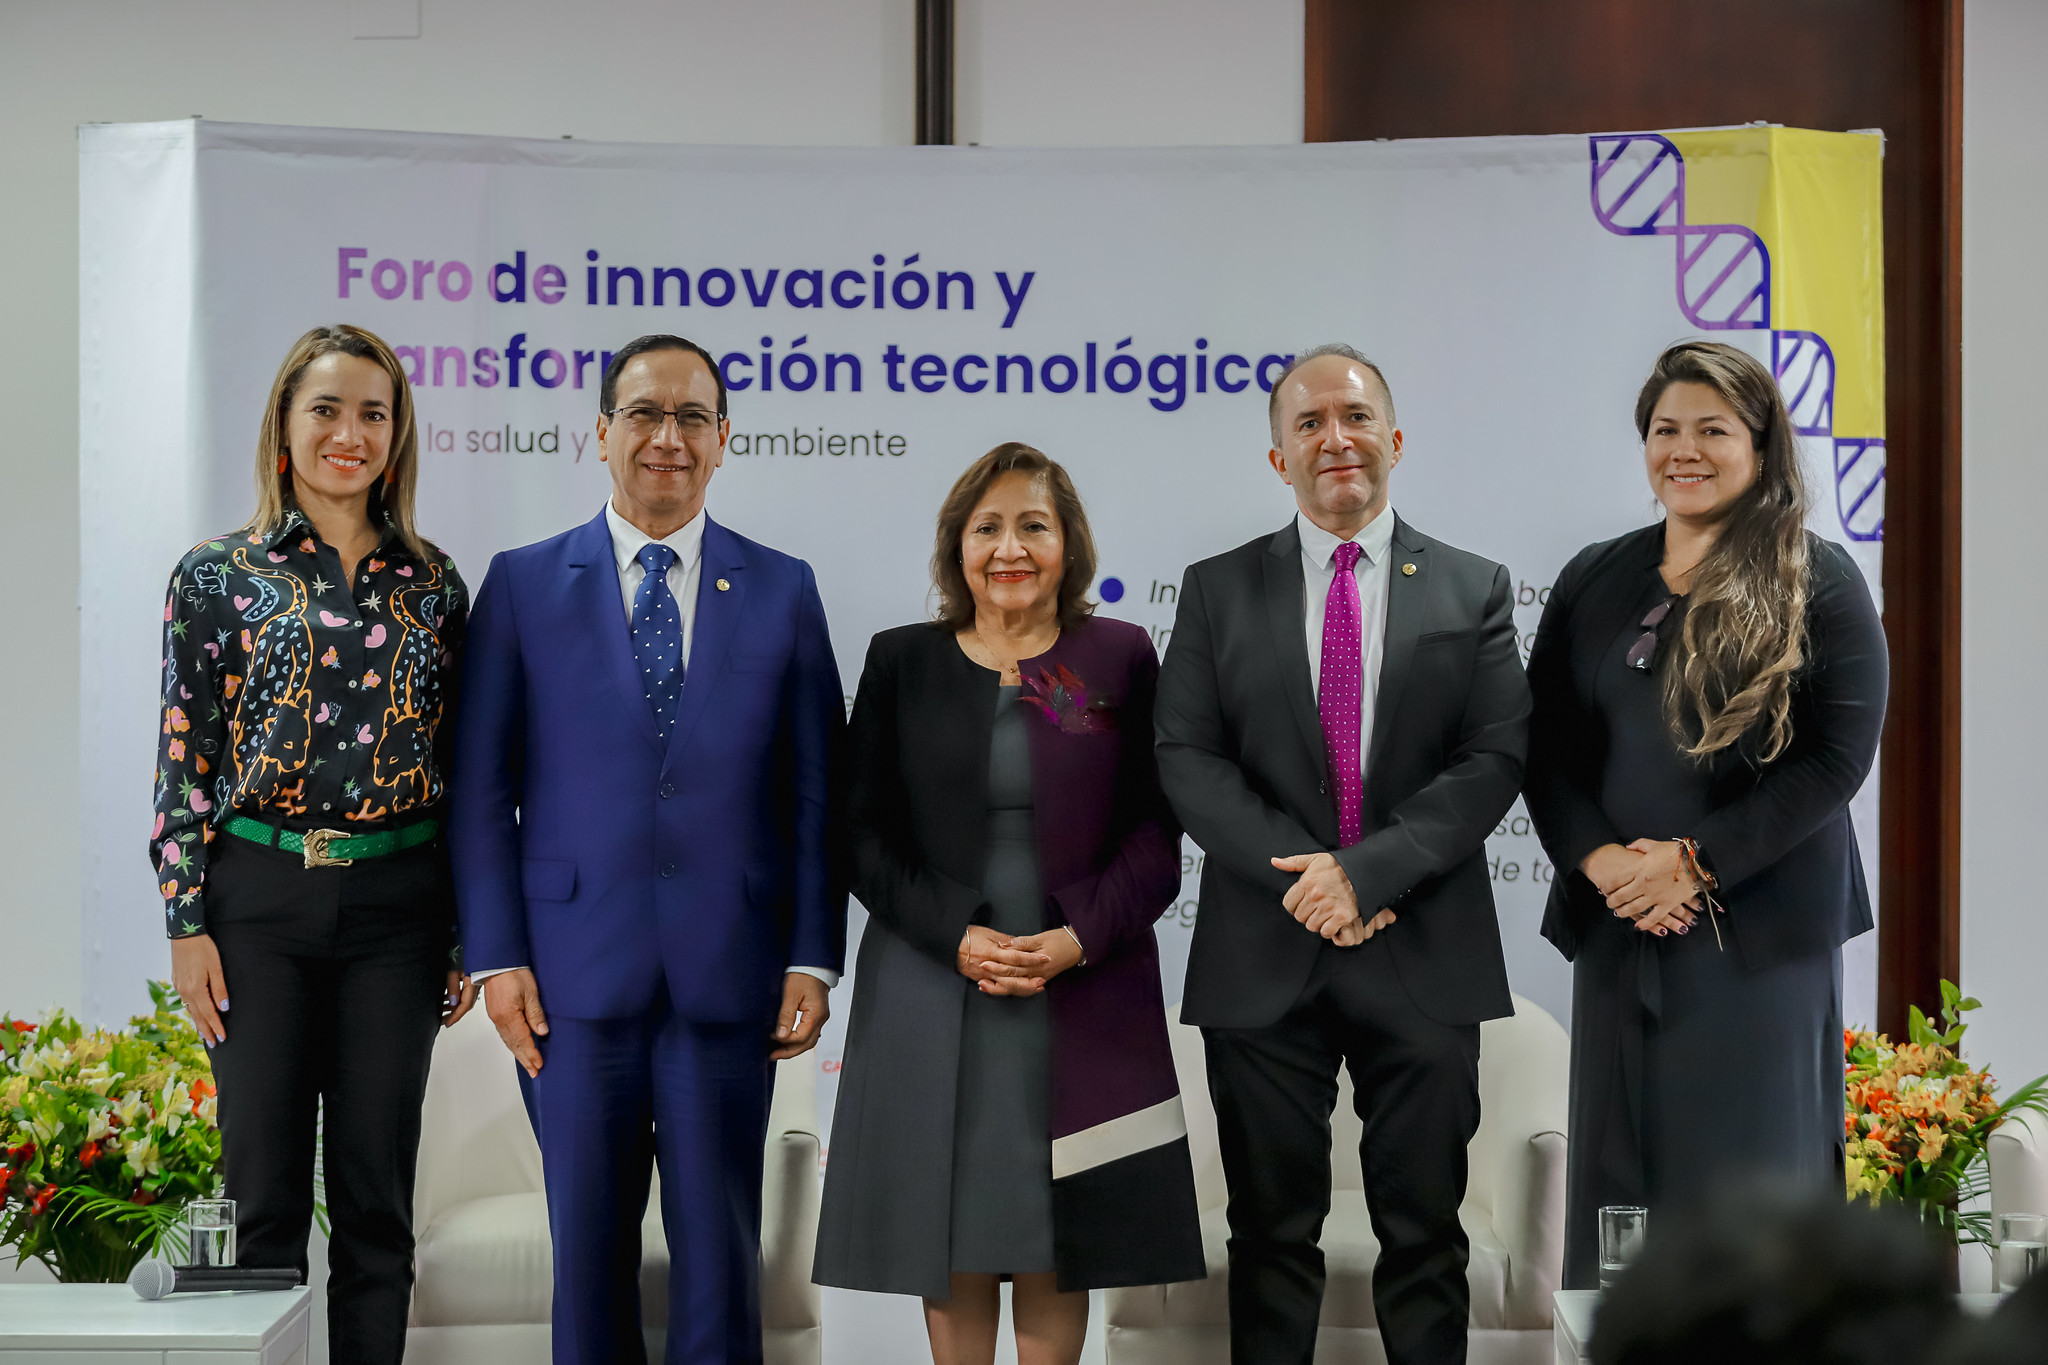 Cayetano Heredia y Astrazeneca se unen para acelerar proyectos de innovación en salud